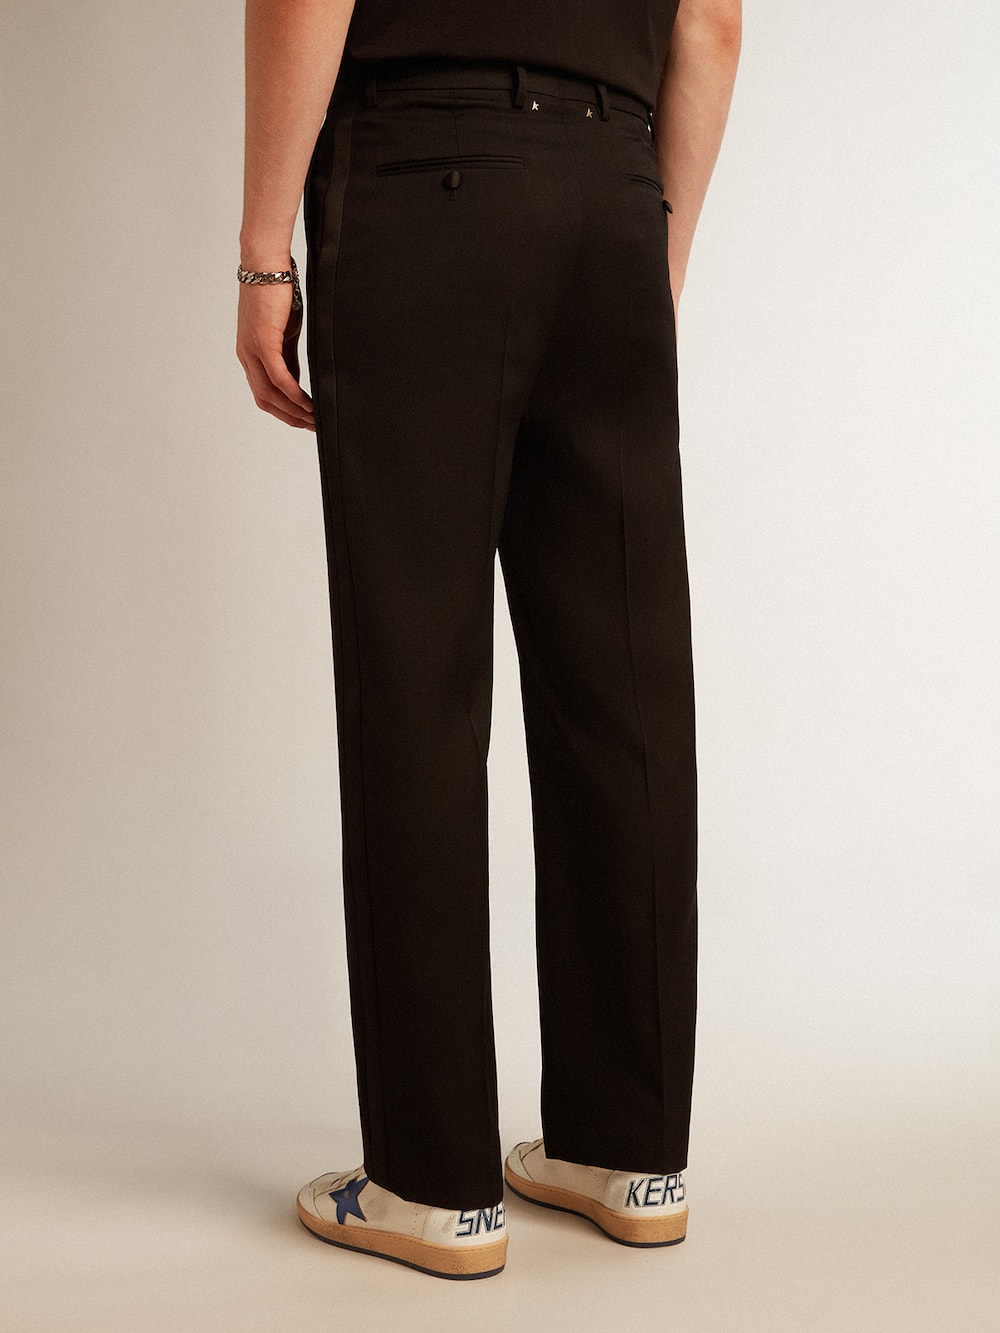 Golden Goose - Pantalón de esmoquin de hombre en gabardina de lana color negro in 